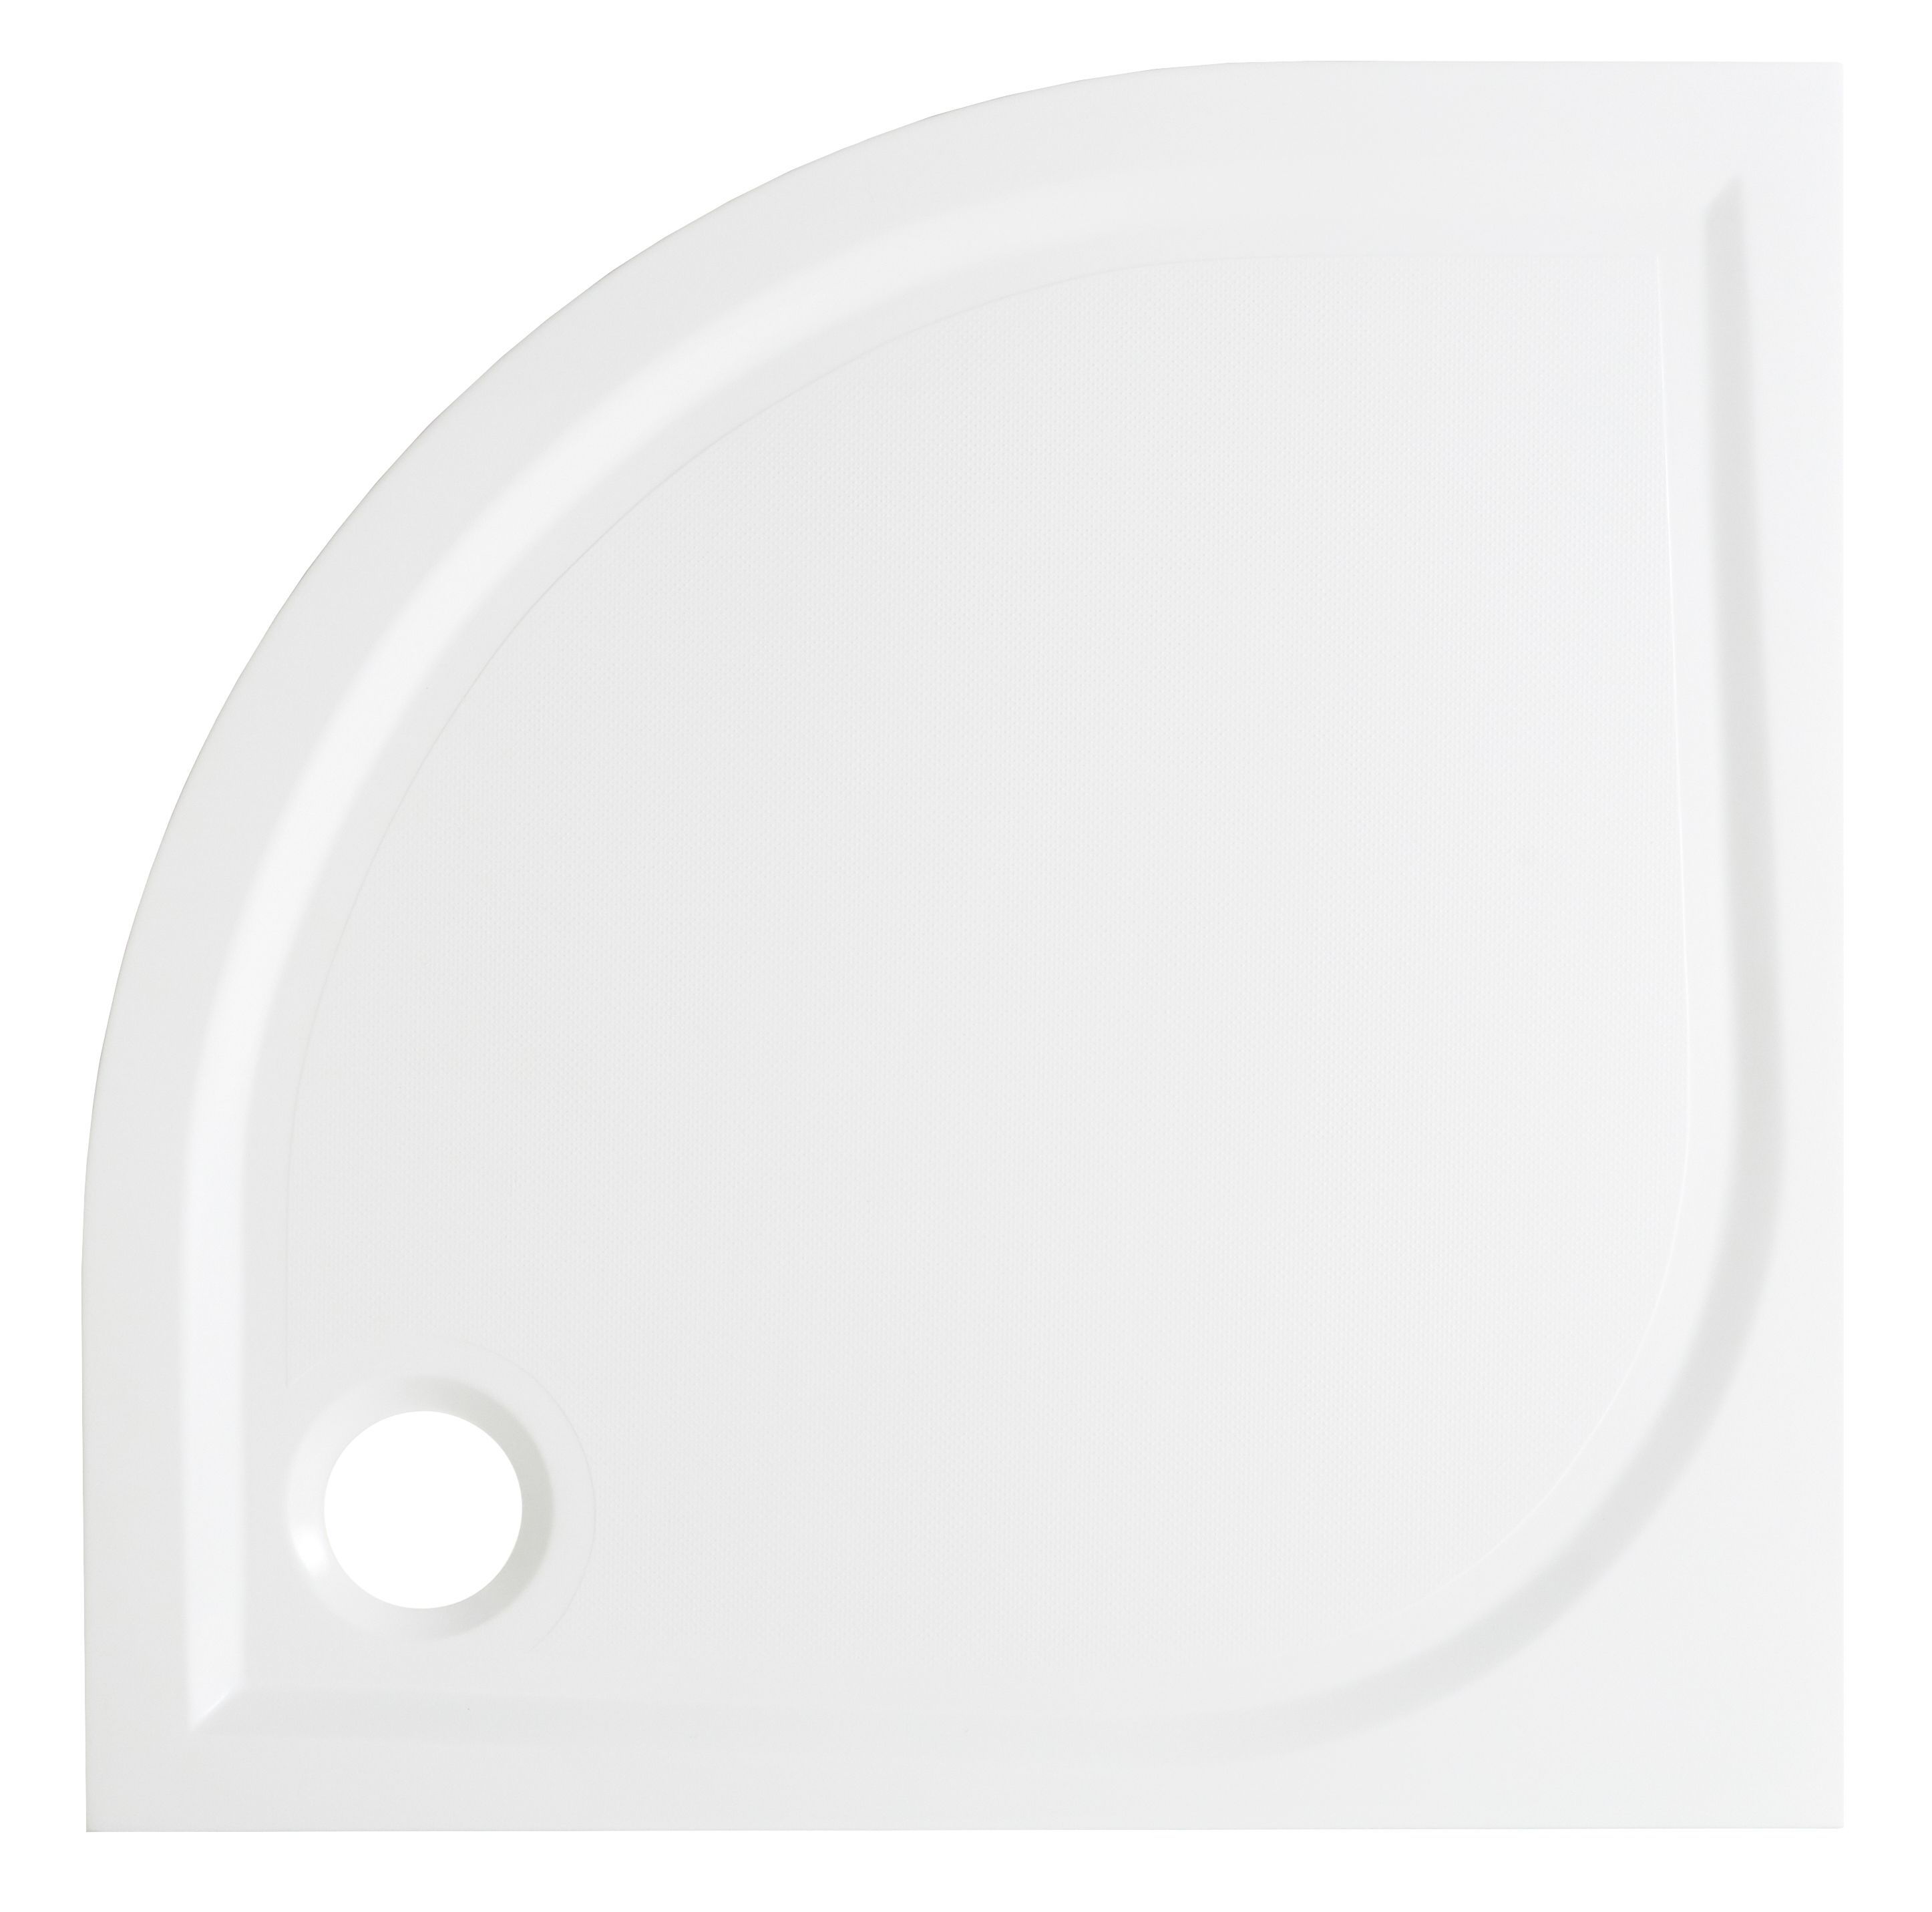 GoodHome Limski White Quadrant Shower tray (L)90cm (W)90cm (H)2.8cm